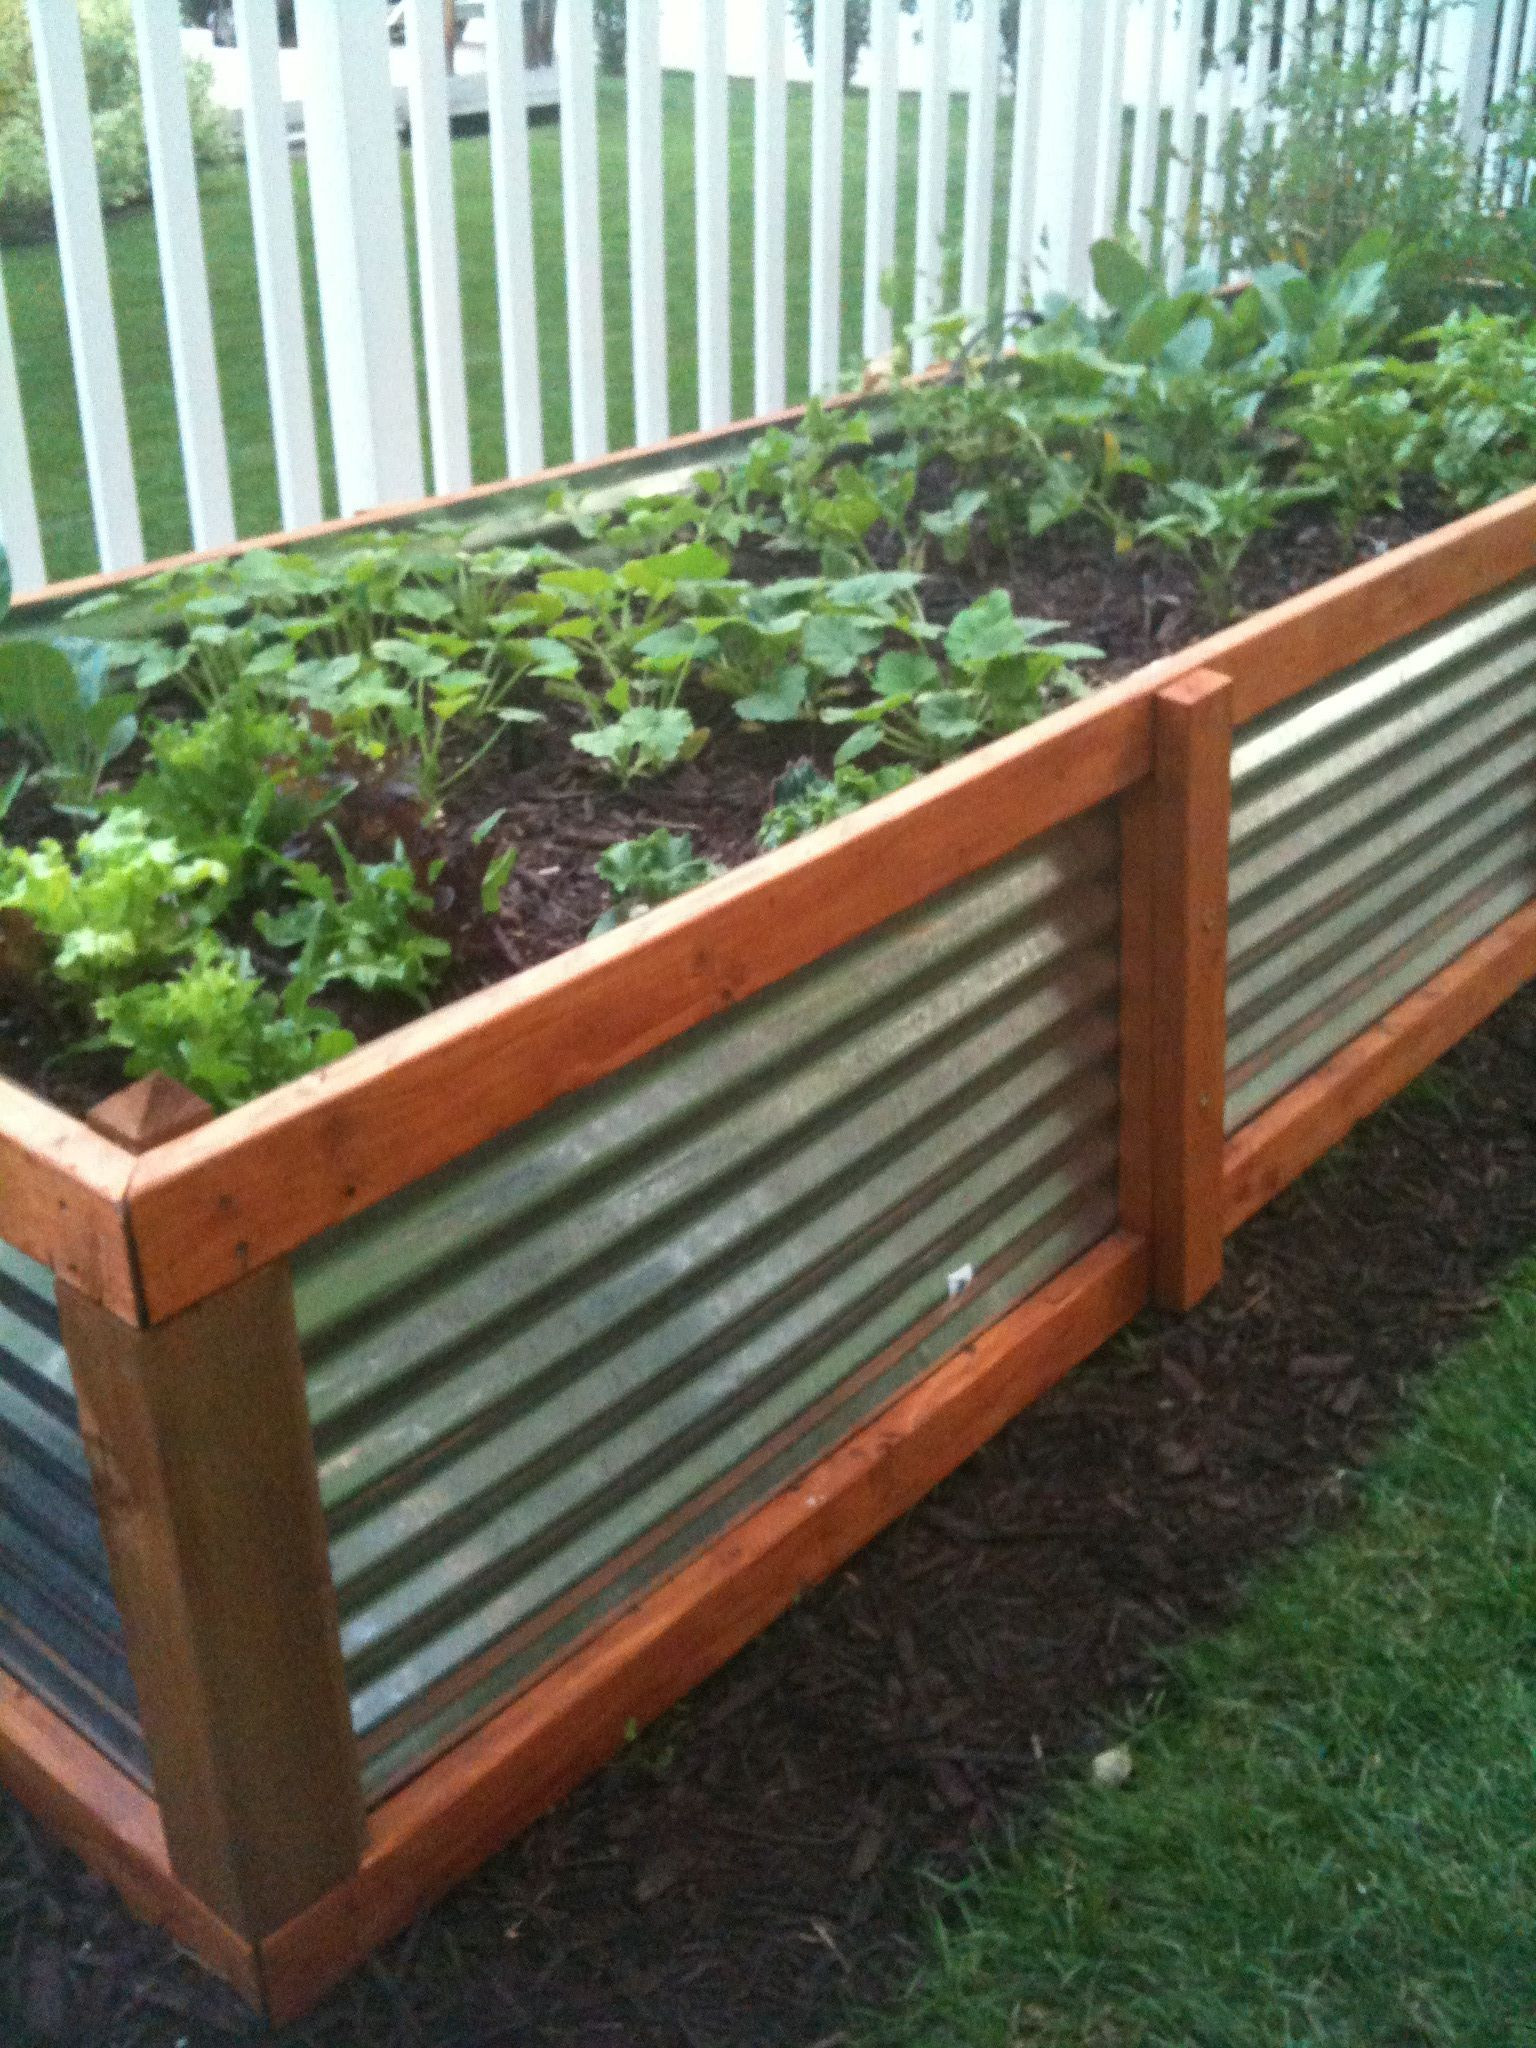 Best ideas about Above Ground Garden DIY
. Save or Pin 12 Raised Garden Bed Tutorials Garden Now.